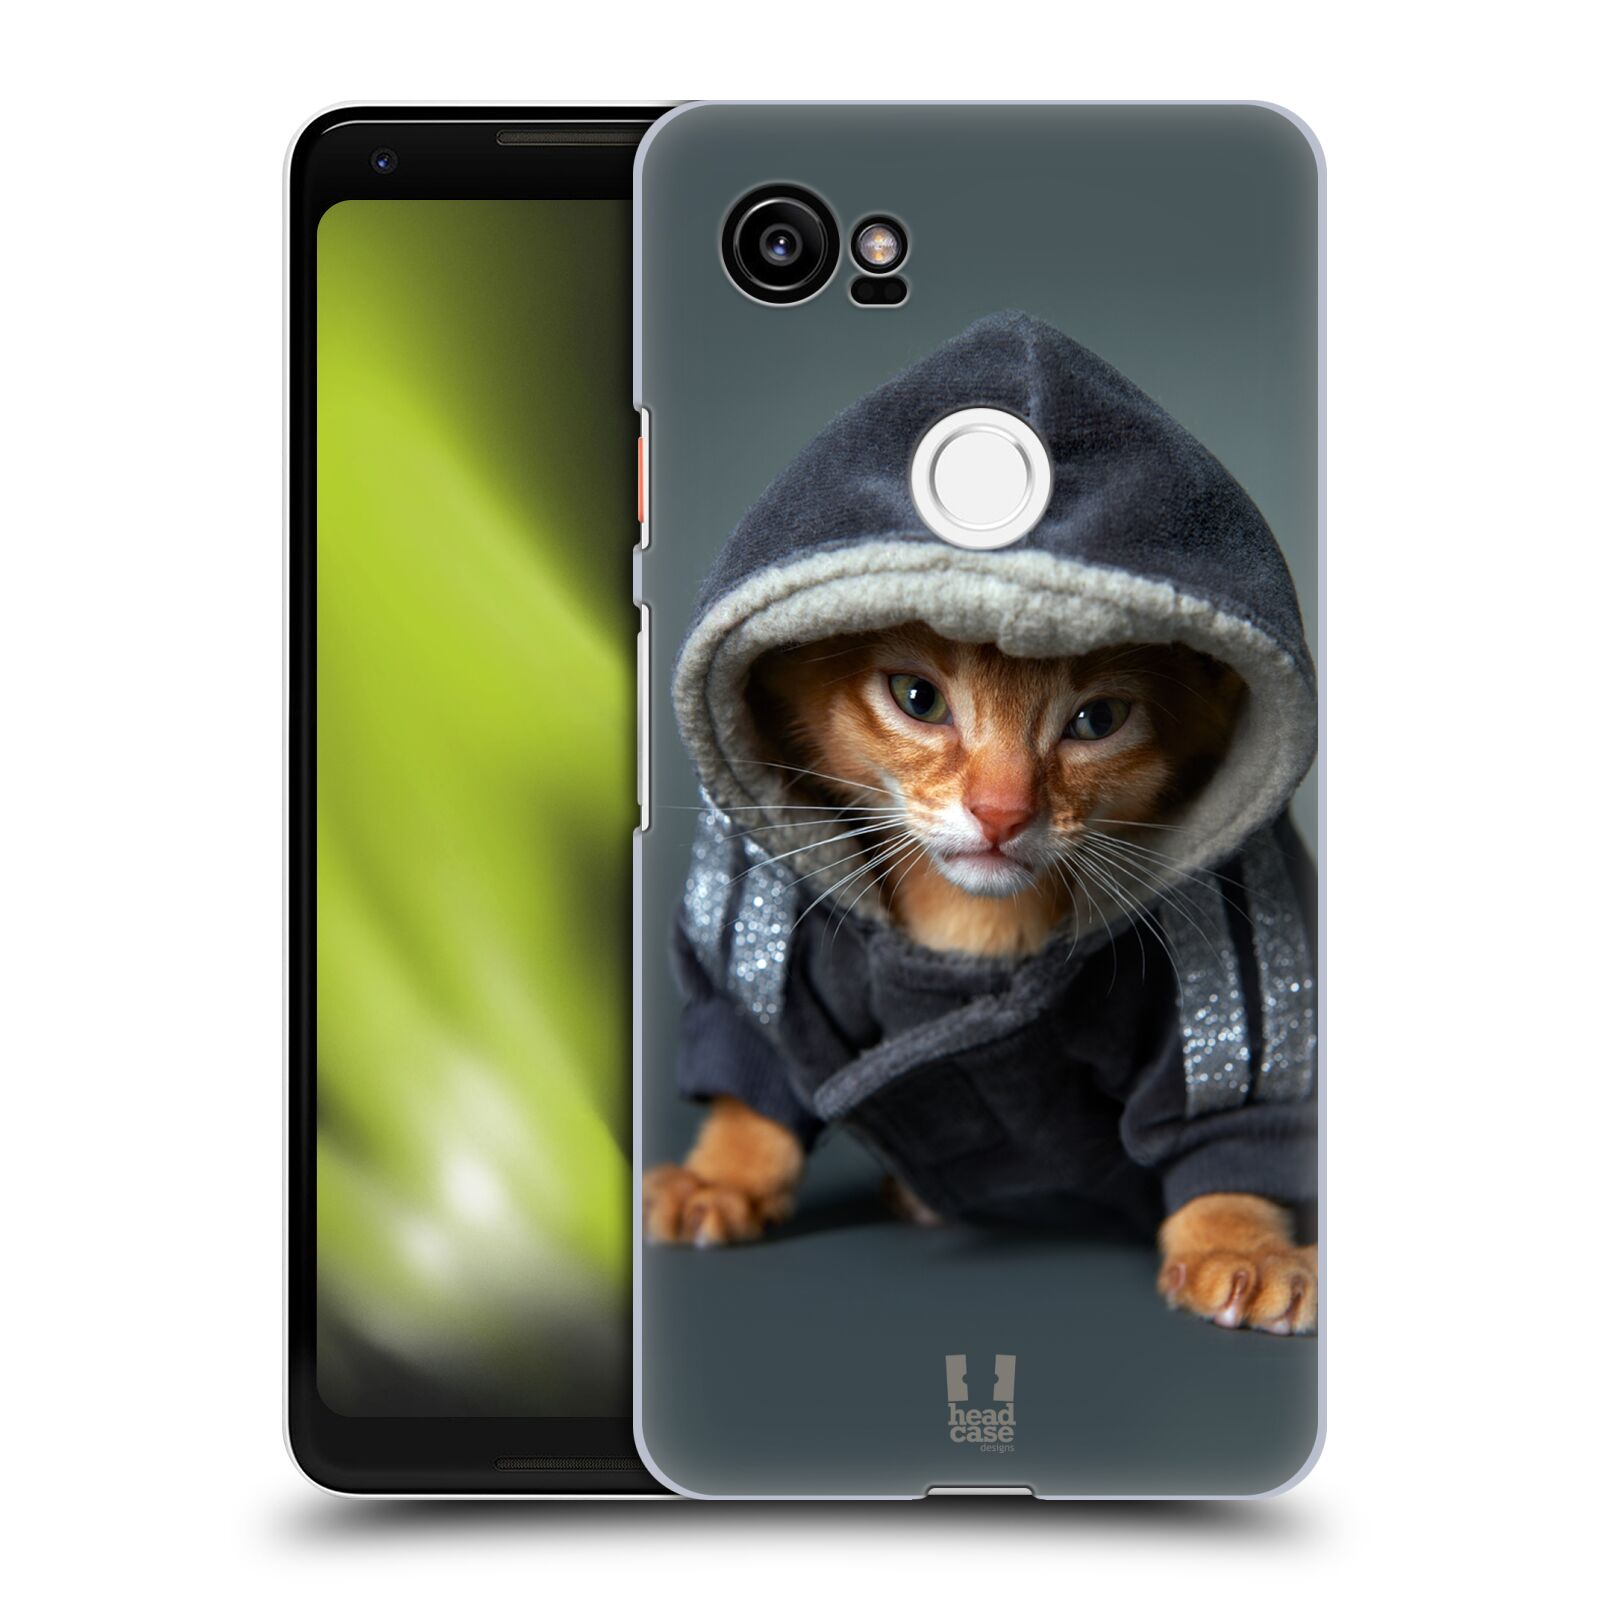 HEAD CASE plastový obal na mobil Google Pixel 2 XL vzor Legrační zvířátka kotě/kočička s kapucí